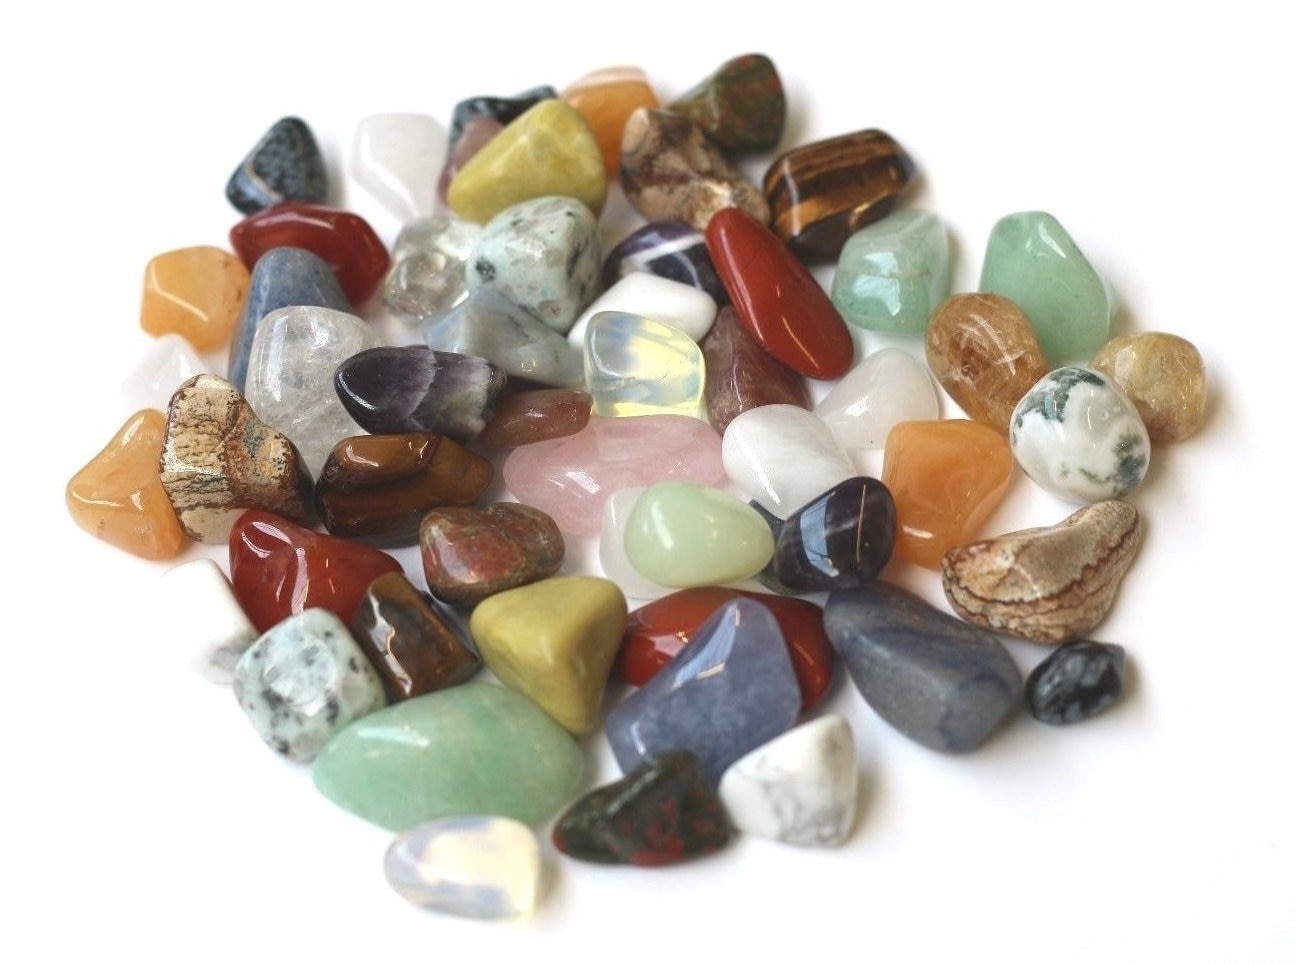 100g Bulk Tumbled Stones Mixed Agate Quartz Crystal Healing Minerals 